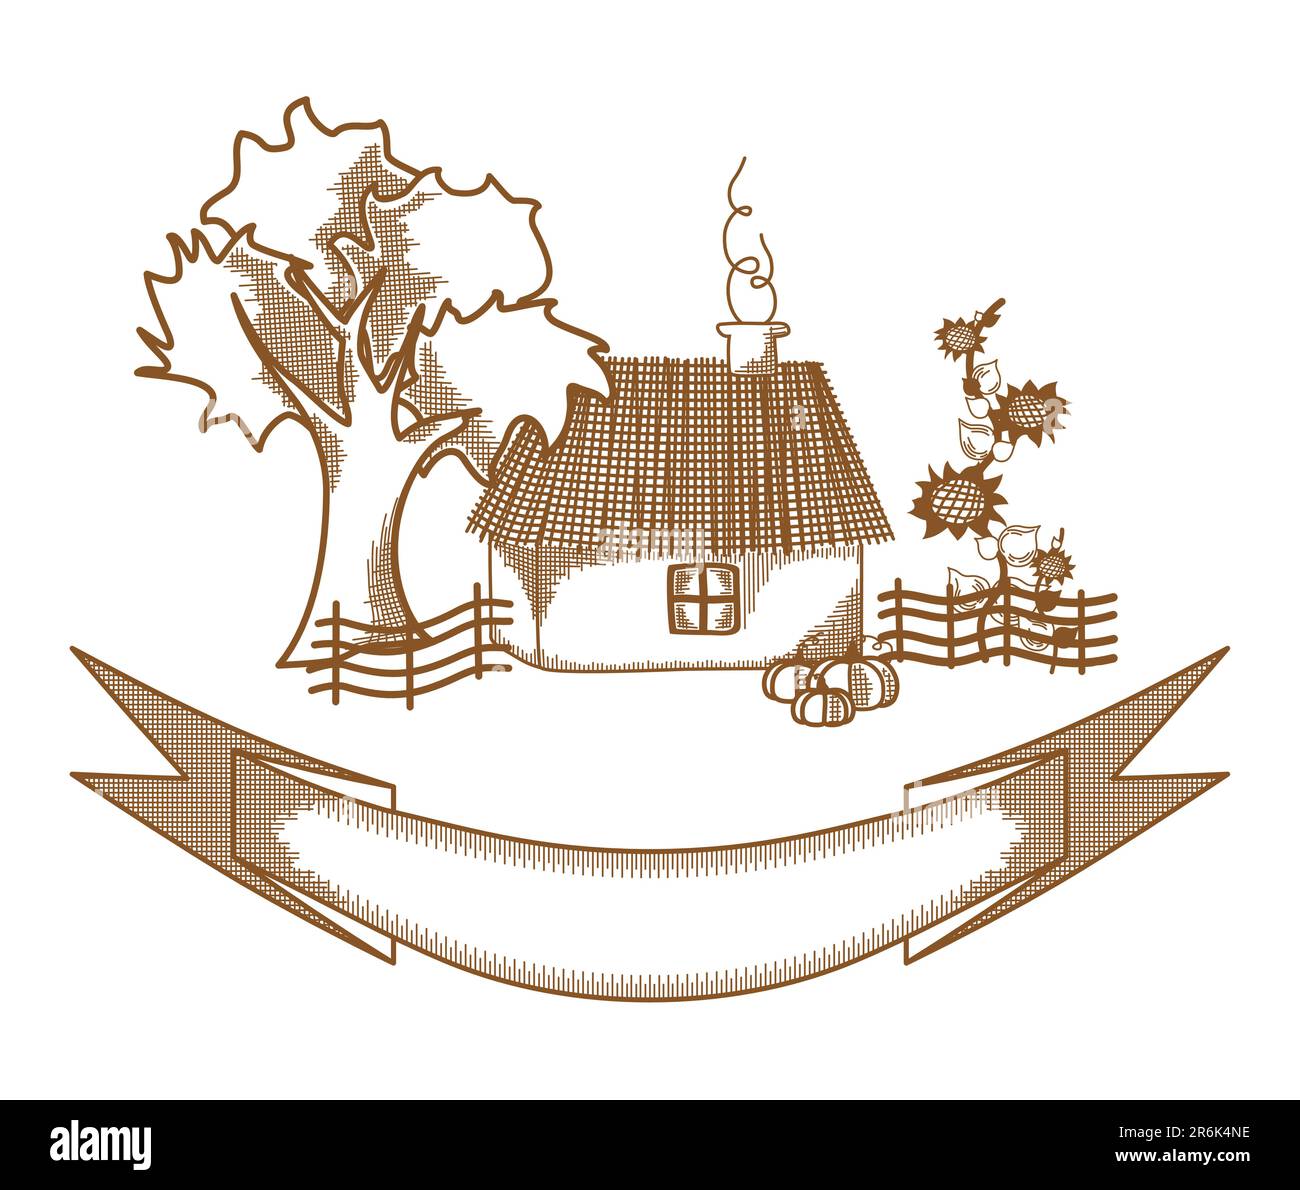 Maison de village. Dessin d'esquisse illustration vectorielle de la maison rurale. Illustration de Vecteur